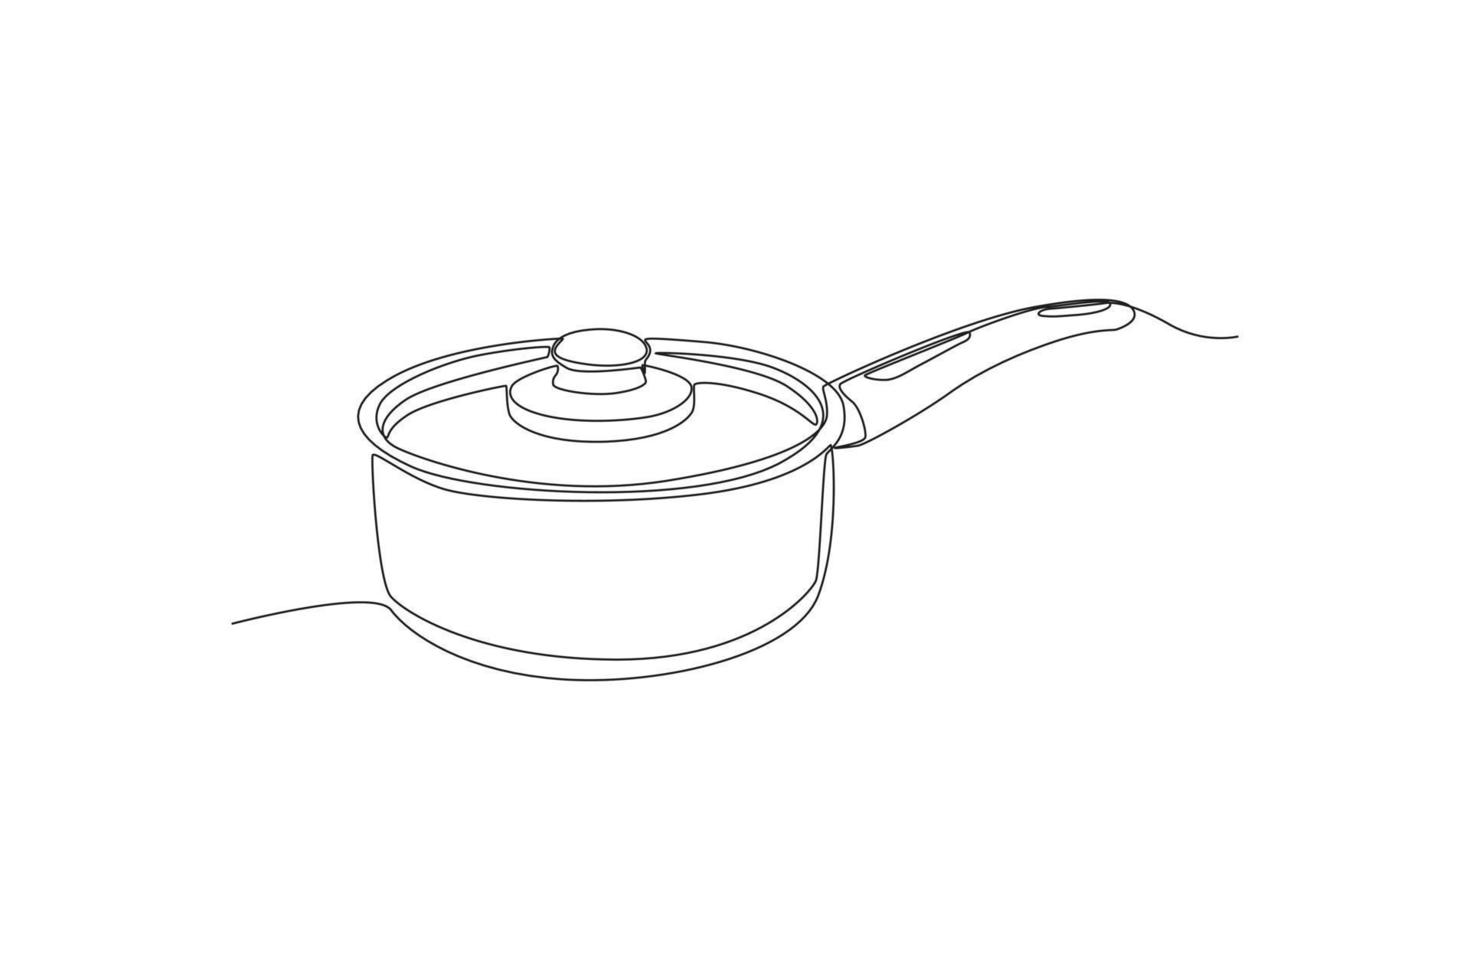 kontinuerlig ett linje teckning kastrull med lock. kök apparater begrepp. enda linje dra design vektor grafisk illustration.